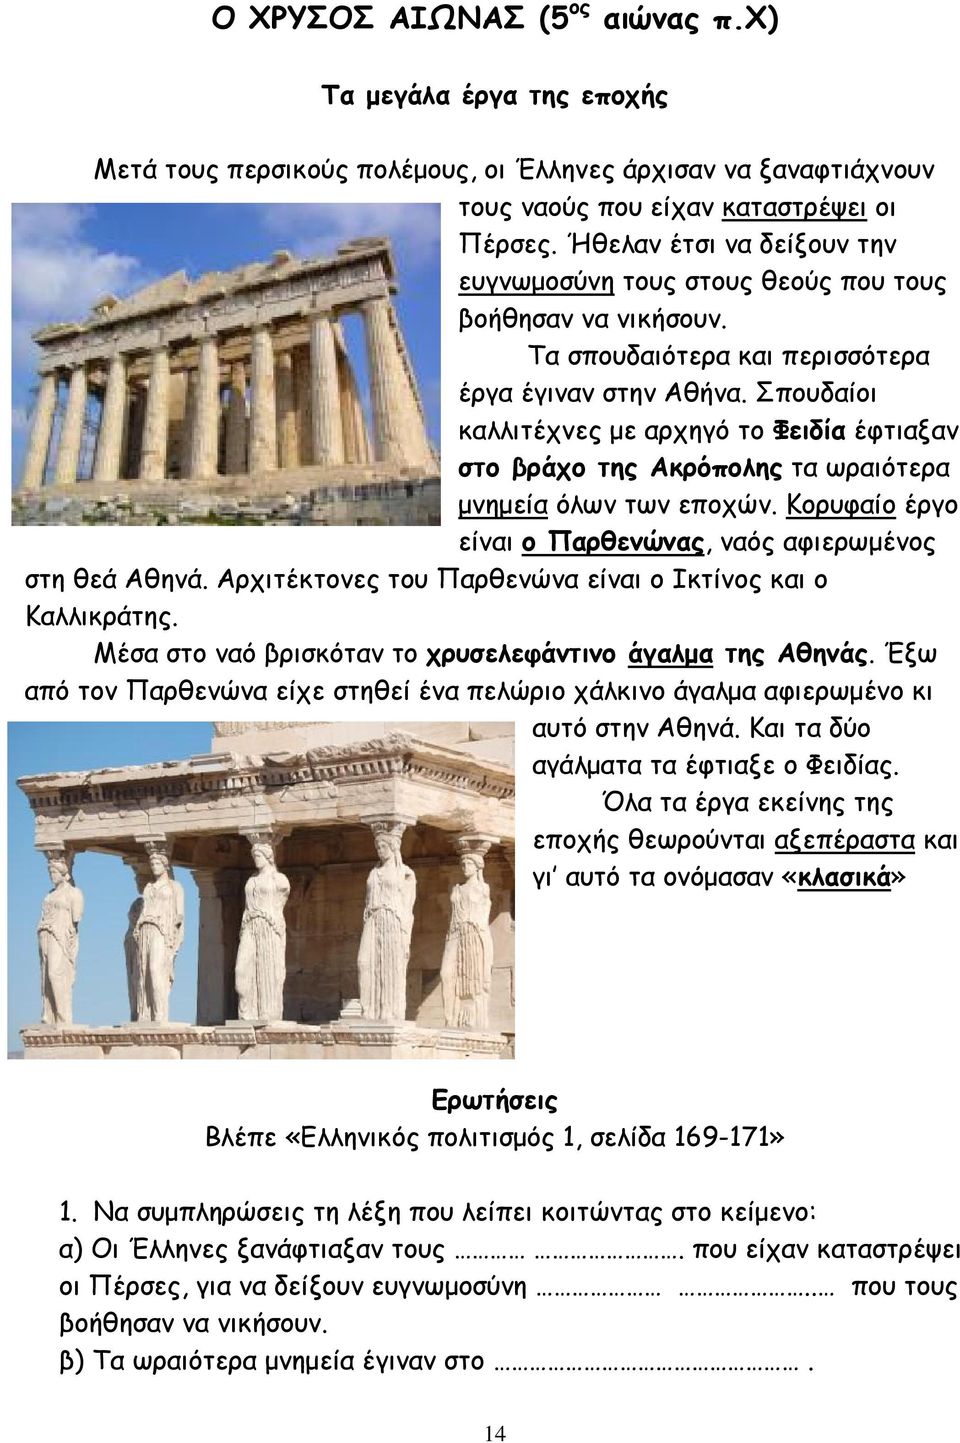 Σπουδαίοι καλλιτέχνες µε αρχηγό το Φειδία έφτιαξαν στο βράχο της Ακρόπολης τα ωραιότερα µνηµεία όλων των εποχών. Κορυφαίο έργο είναι ο Παρθενώνας, ναός αφιερωµένος στη θεά Αθηνά.